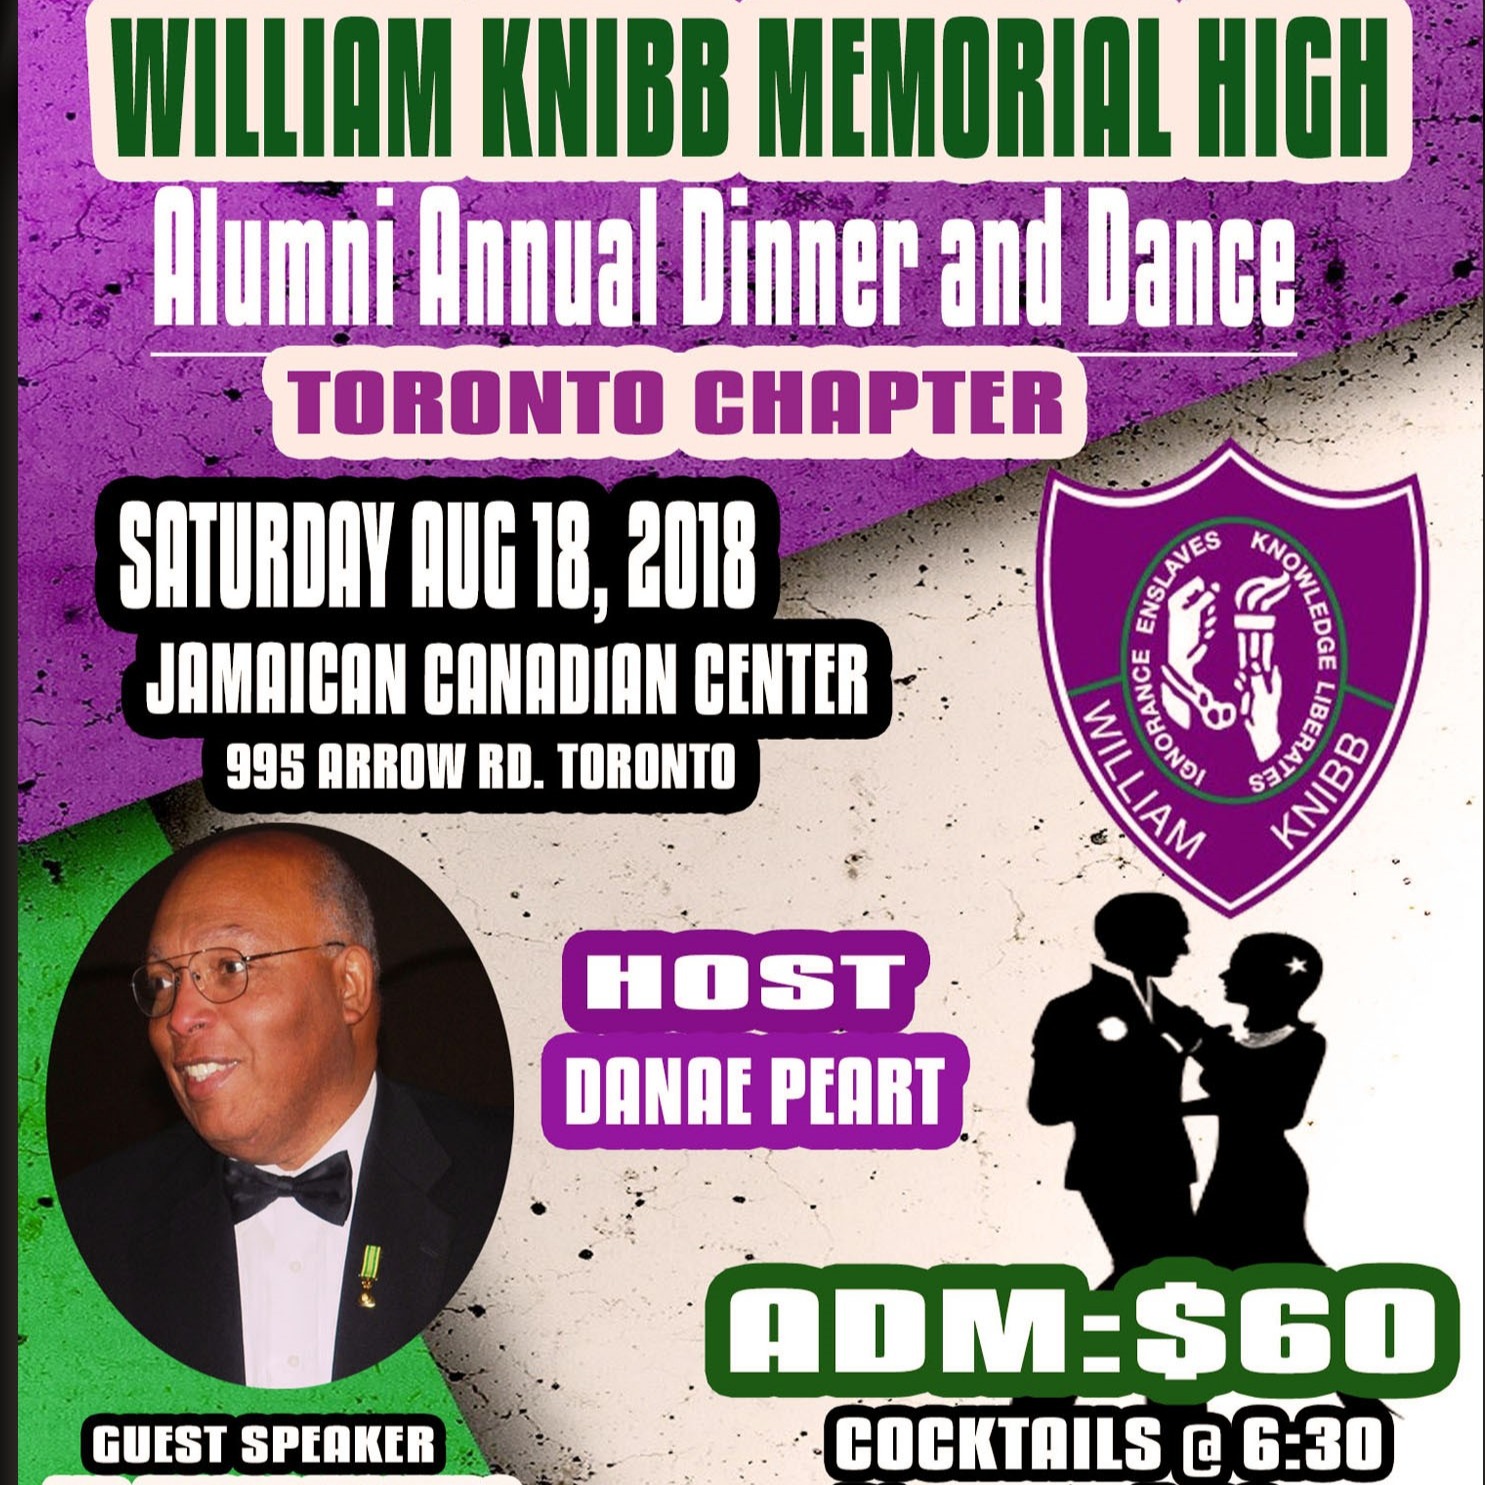 William Knibb Memorial High